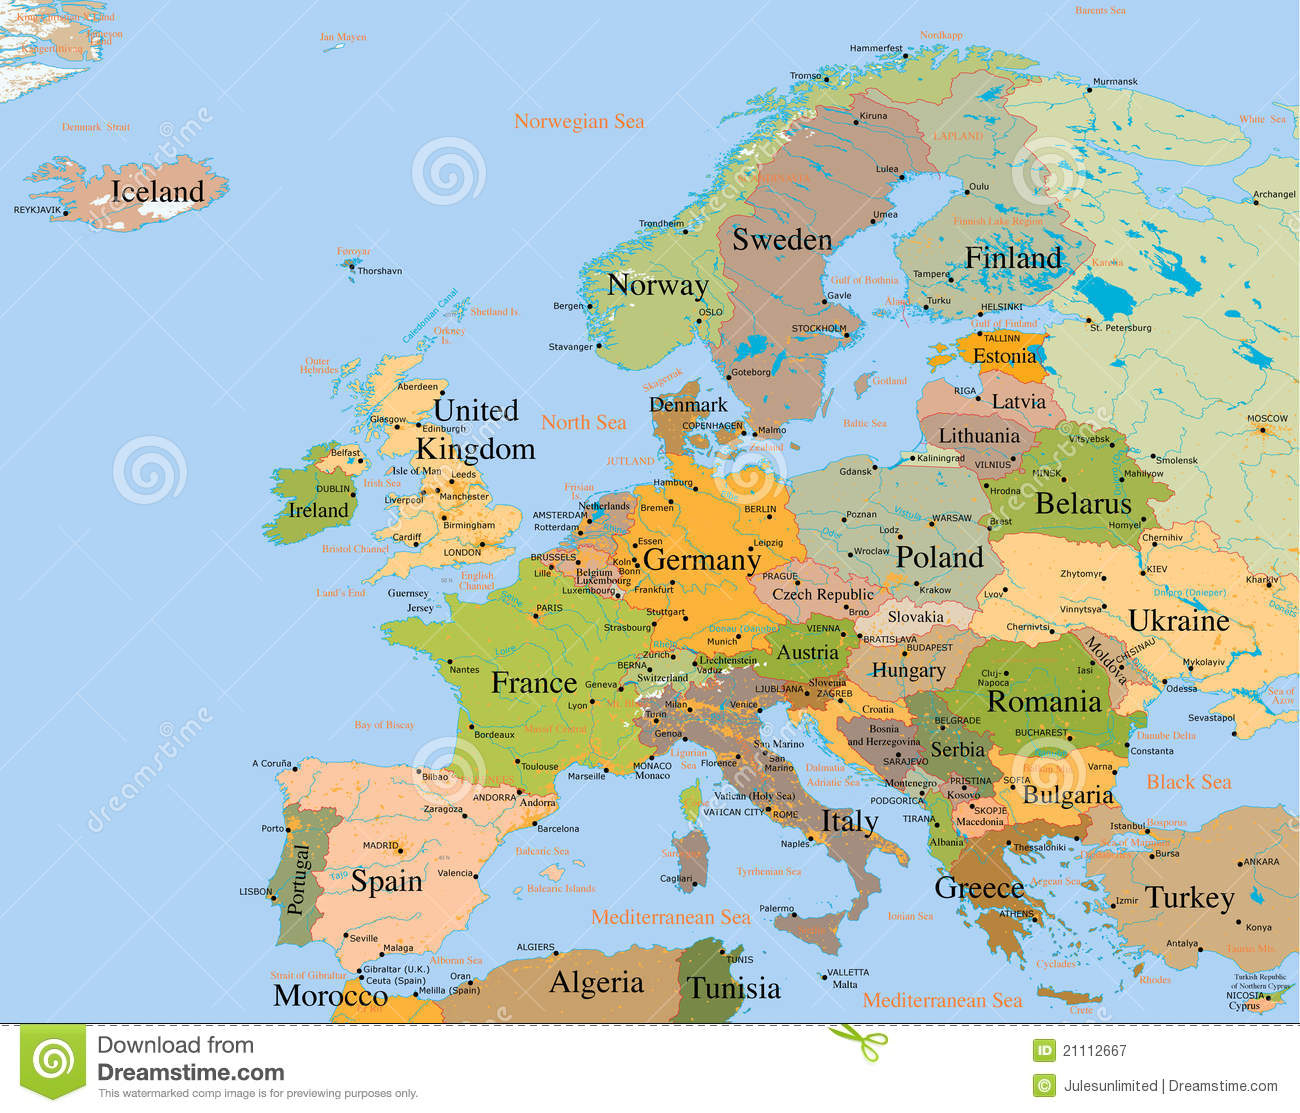 Carte L'europe - Détaillée Image Stock. Image Du Globe avec Carte De L Europe Détaillée